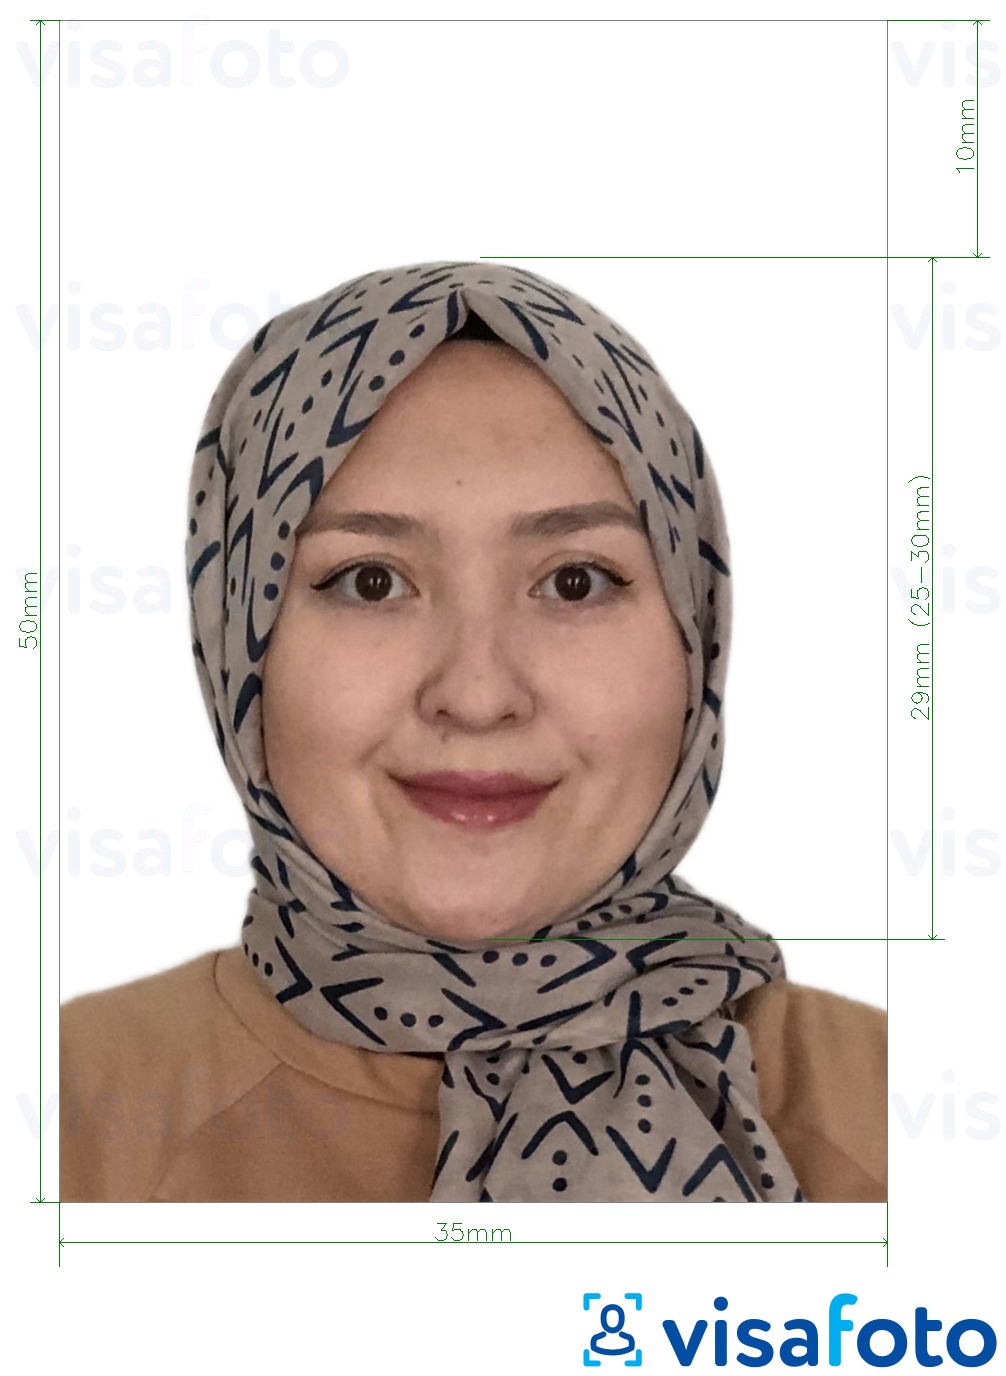 马来西亚护照 35x50毫米 白色背景 的标准尺寸照片示例